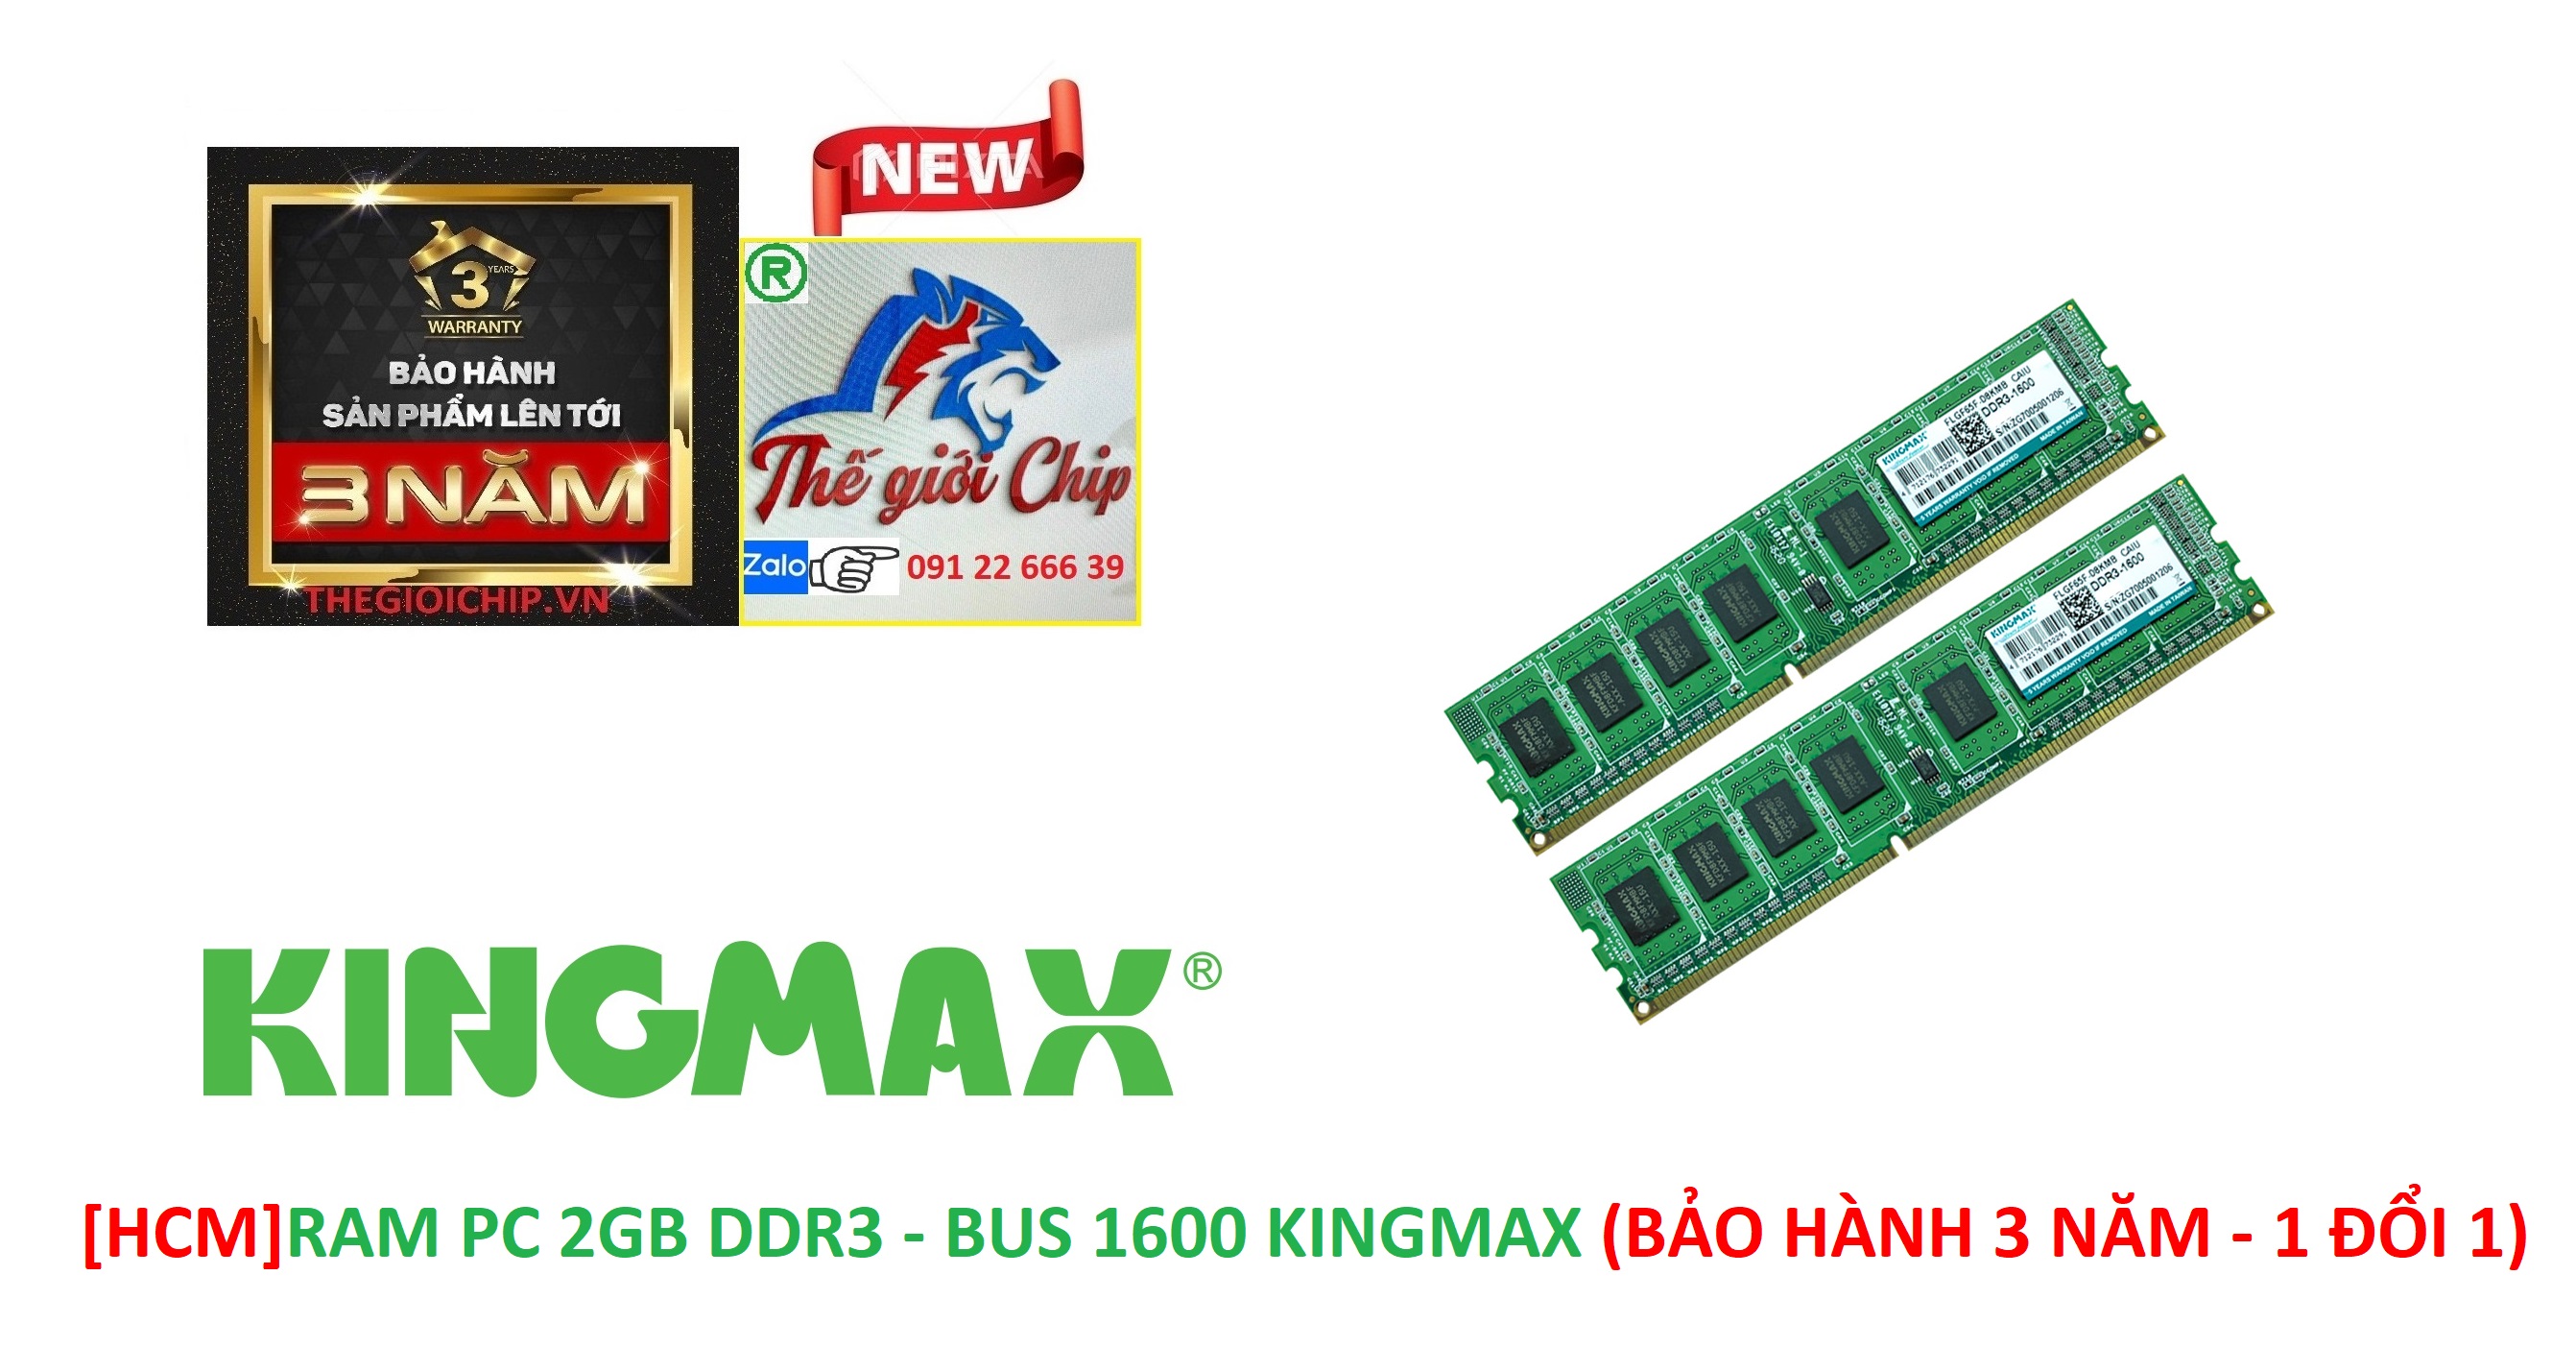 HCMRAM PC 2GB DDR3 - BUS 1600 KINGMAX BẢO HÀNH 3 NĂM - 1 ĐỔI 1